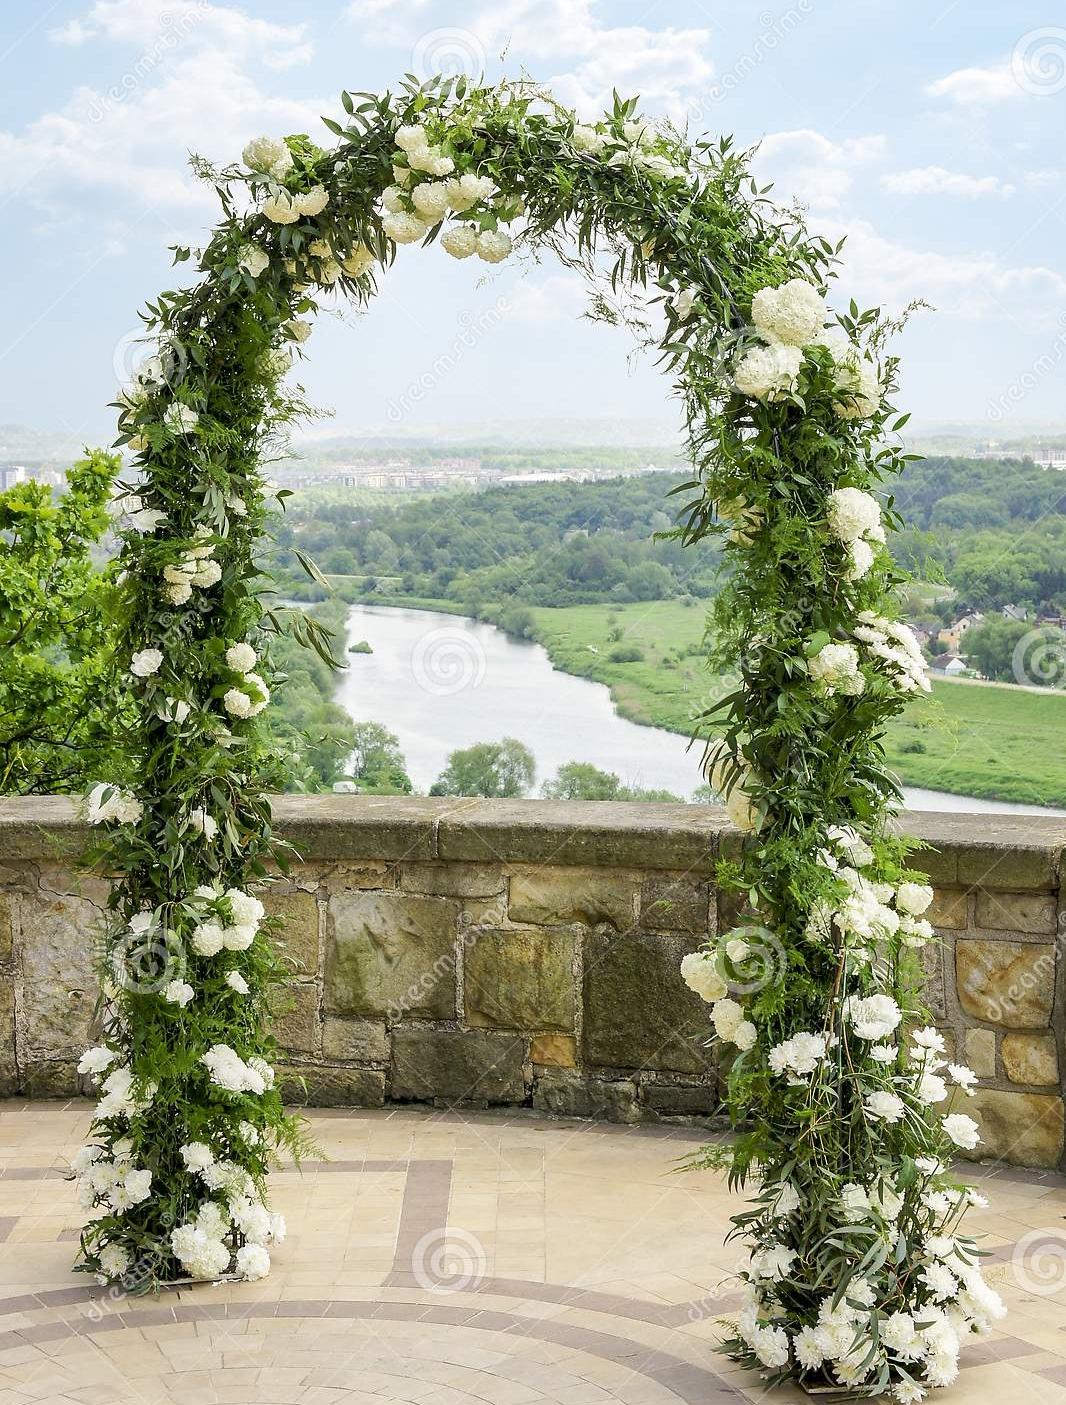 Wedding Archway